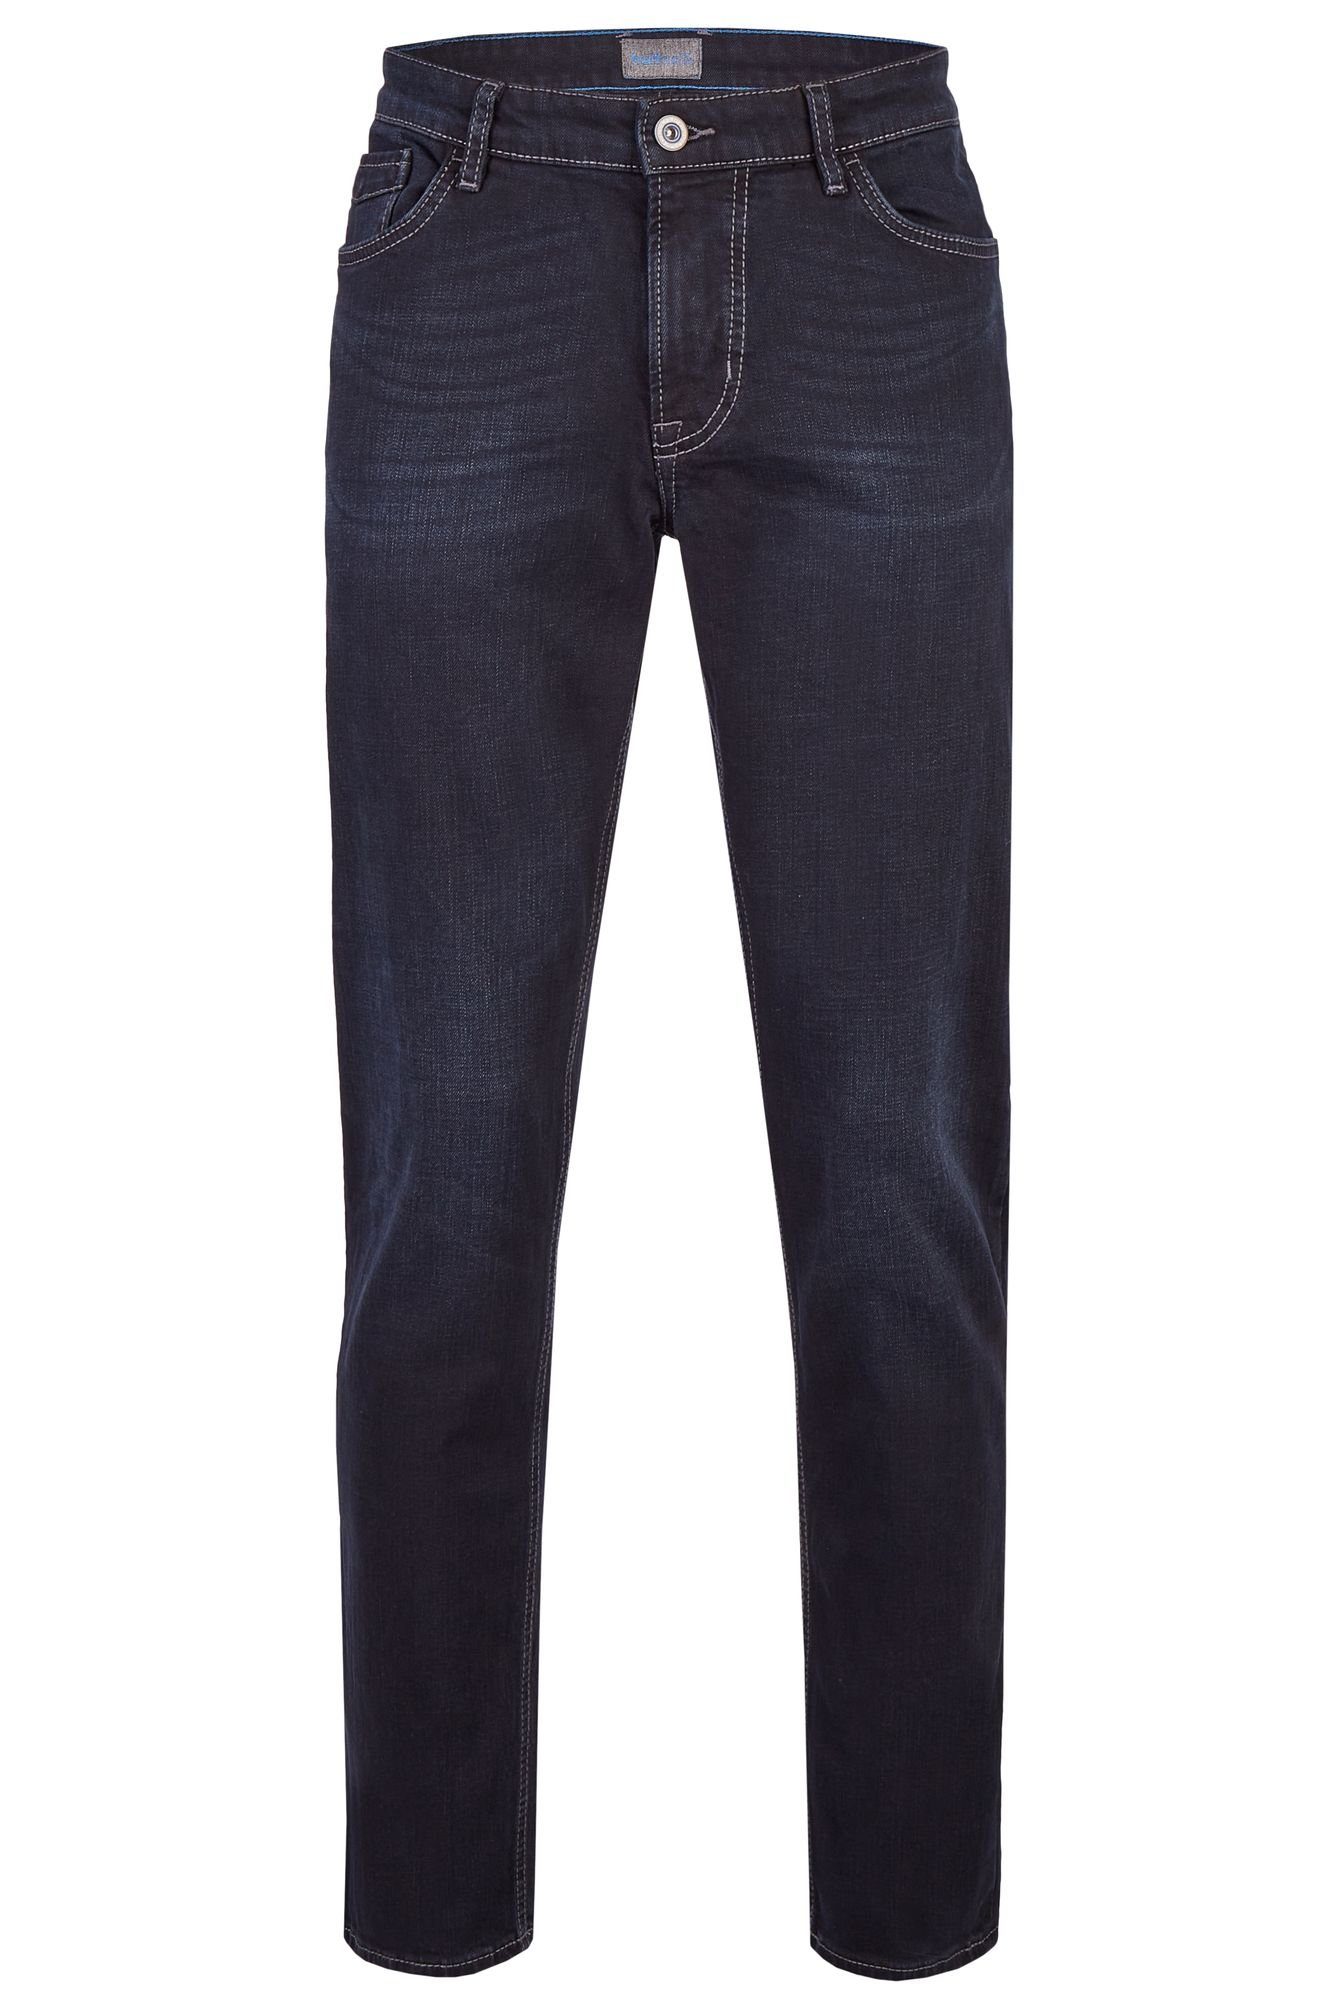 Hattric 5-Pocket-Jeans 688465-9285 blue black (89)